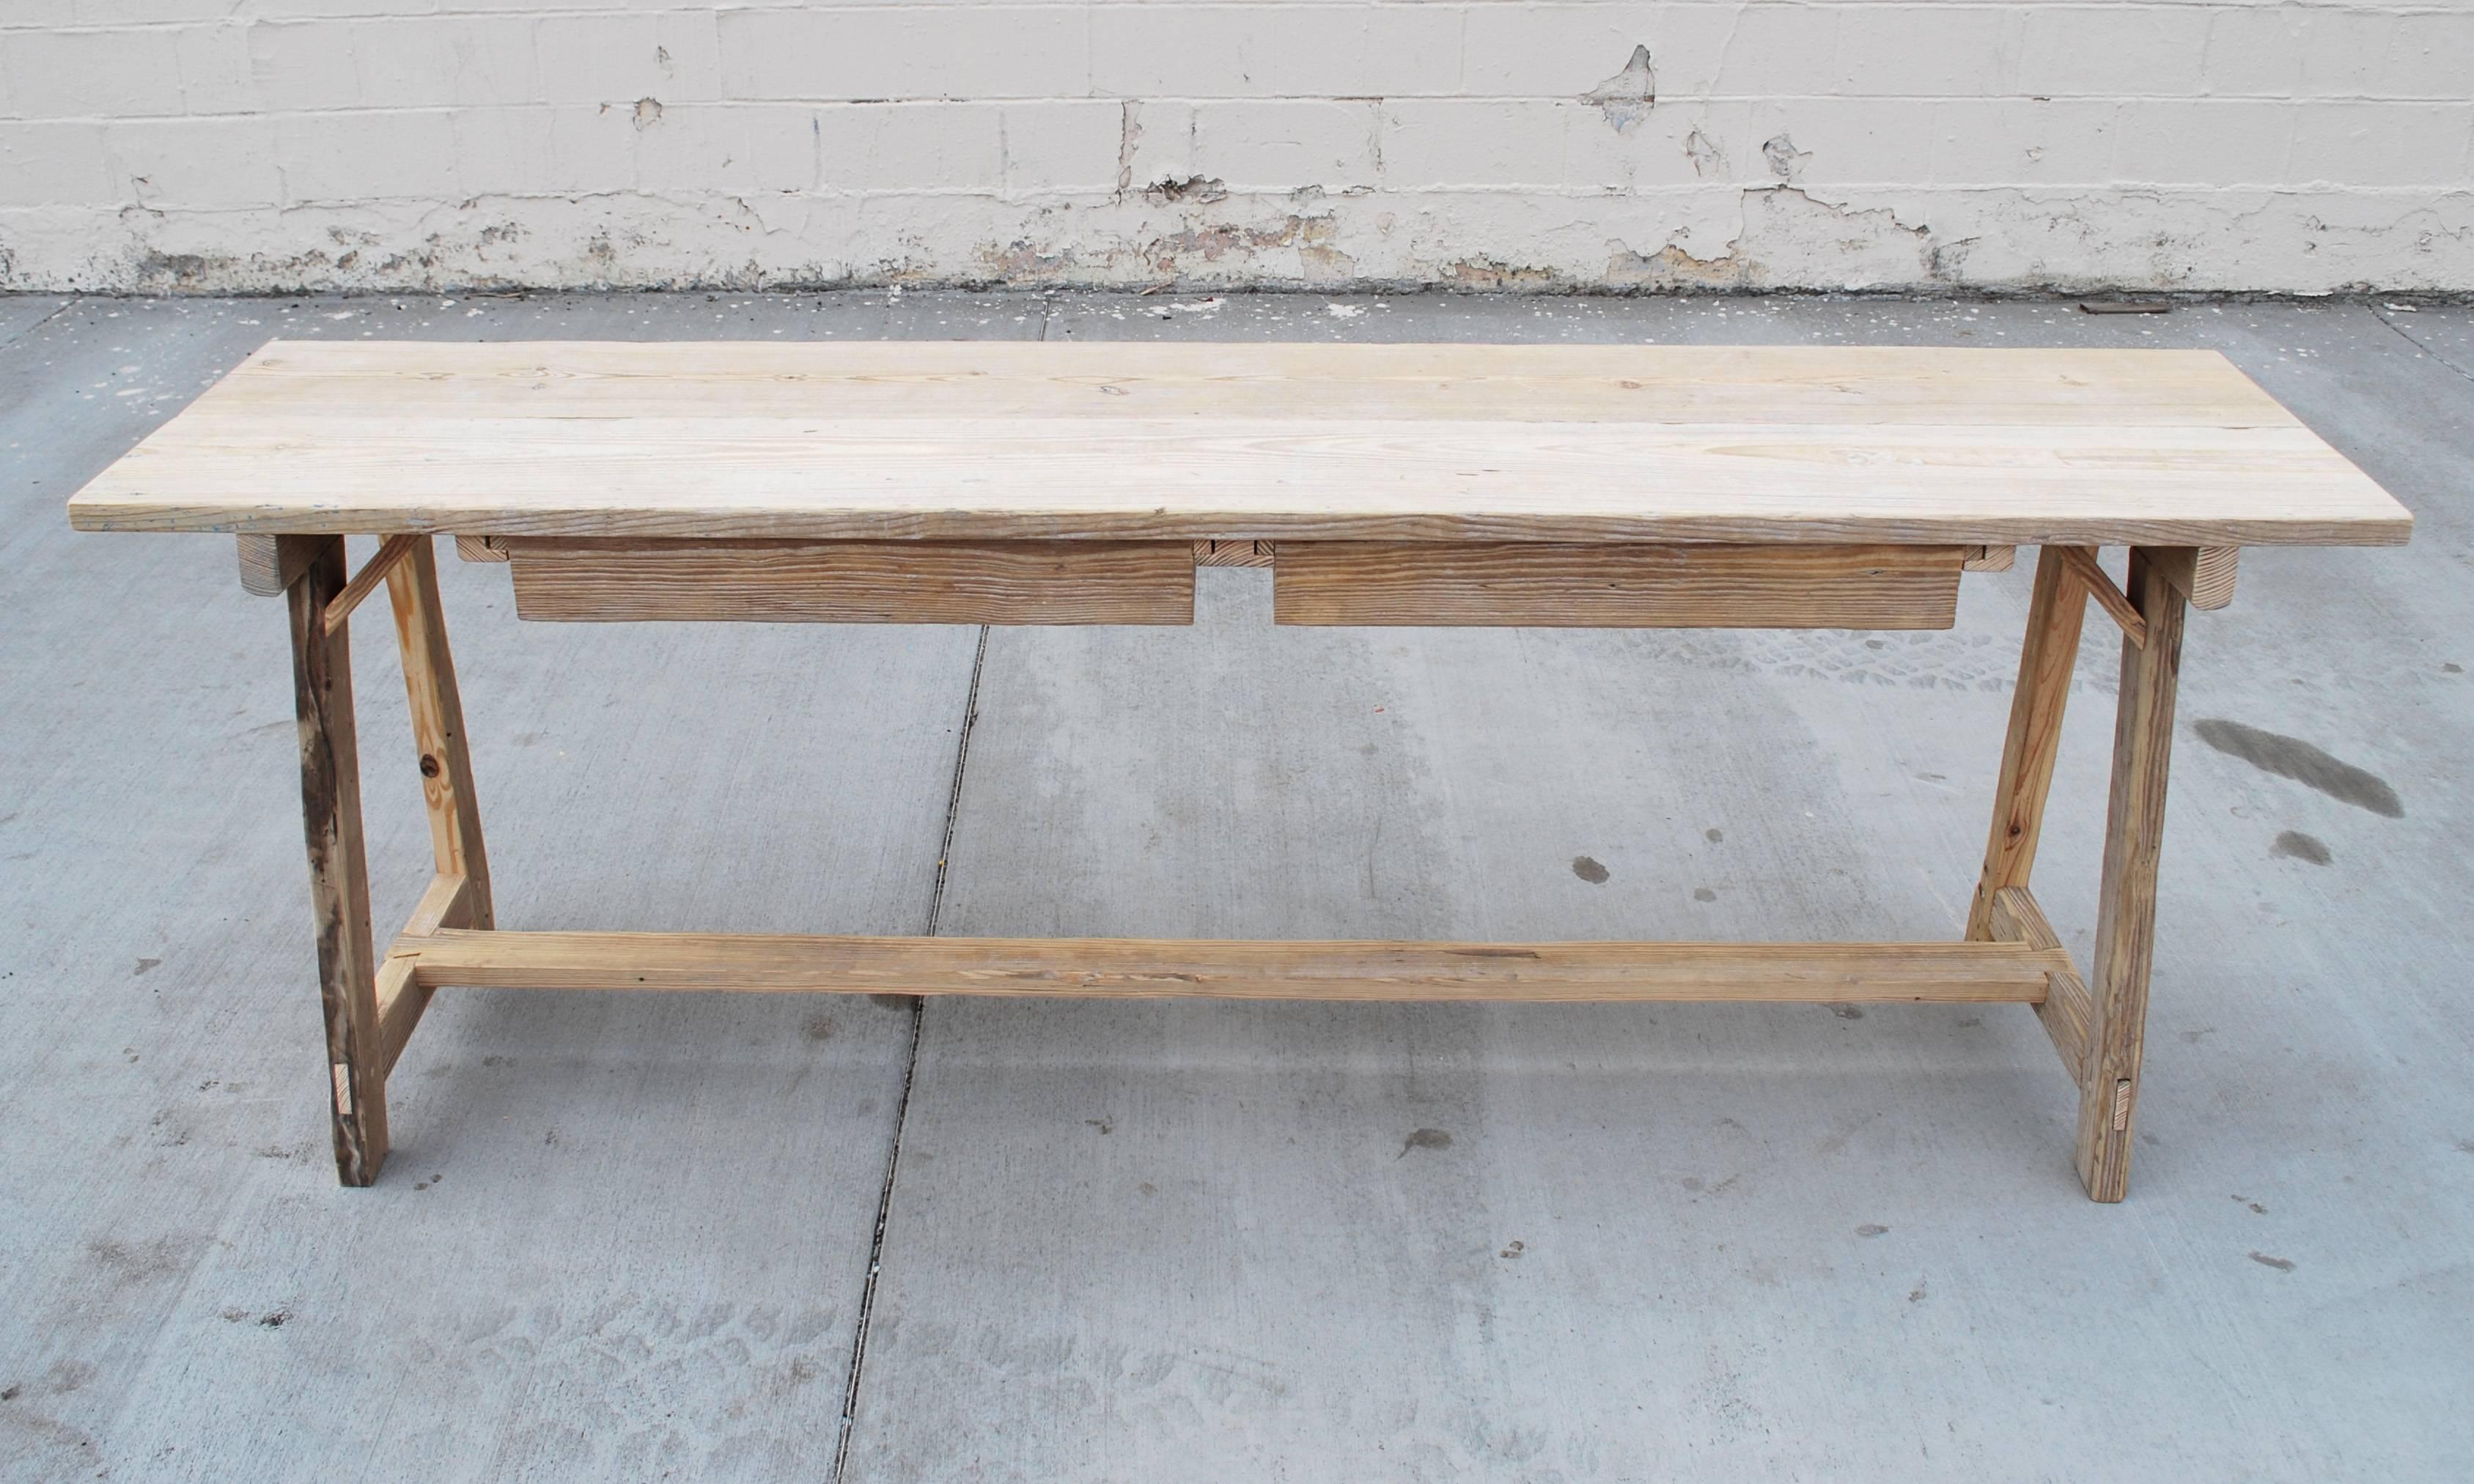 Cette table console en pin recyclé a une belle patine, ses pieds sont évasés dans l'axe de la longueur et de la largeur et elle possède deux grands tiroirs pouvant être tirés de chaque côté.

Comme chaque table est fabriquée dans notre propre